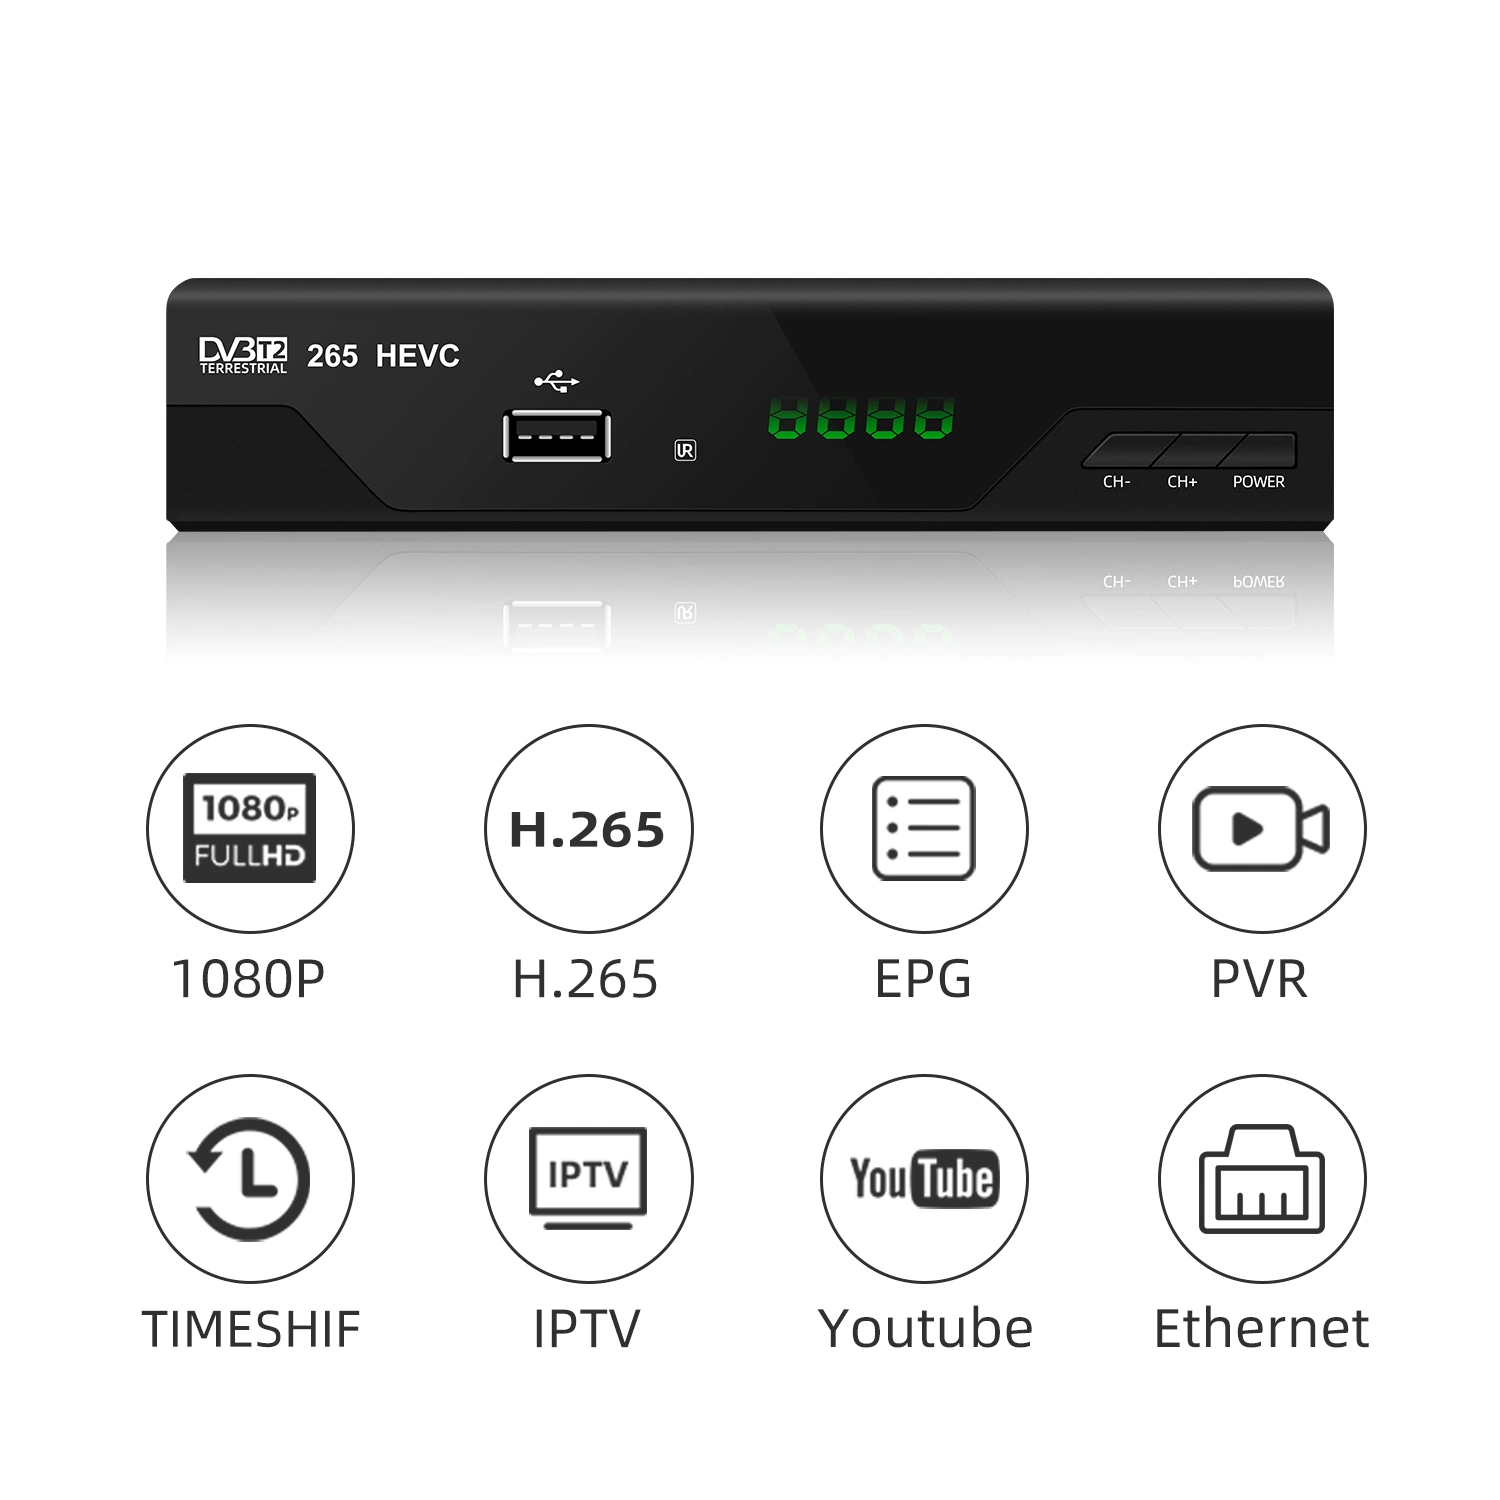 جهاز استقبال تلفزيون DVB-T2 التشيكية عالي الوضوح بالكامل بدقة 1080p مع دعم HEVC H. 265 Decoder